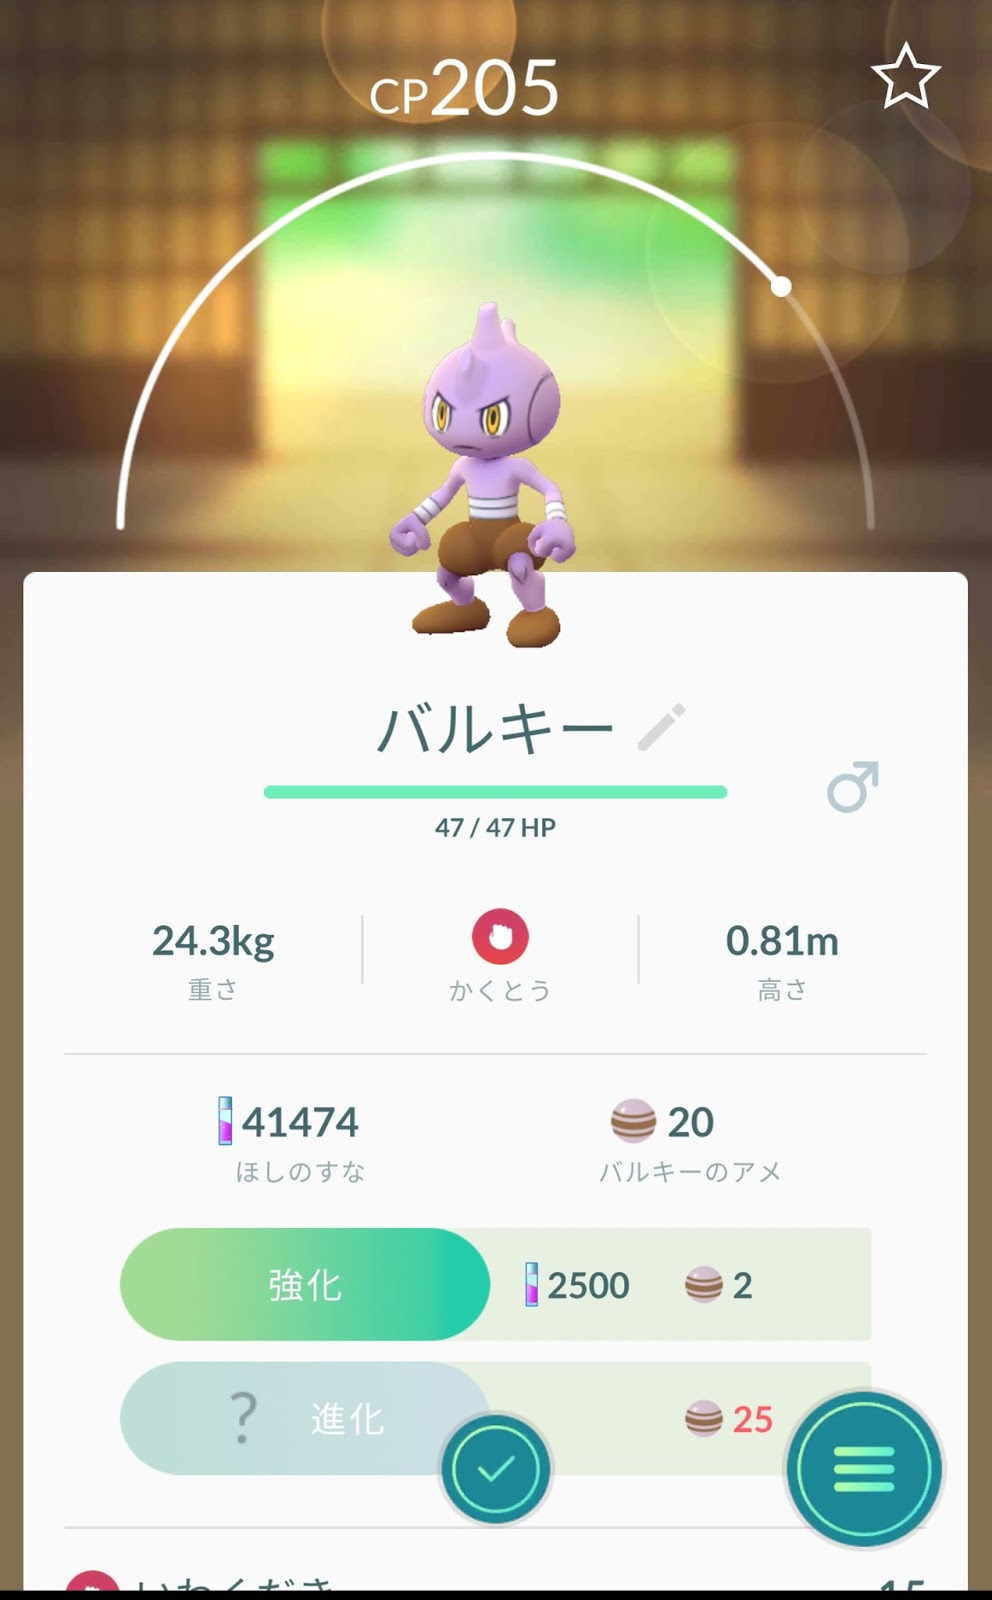 ポケモンgo日記 Pokemon Go Diary In Japan バルキー は サワムラー エビワラー カポエラー のいずれかに進化 バルキー を カポエラー に進化させてみた